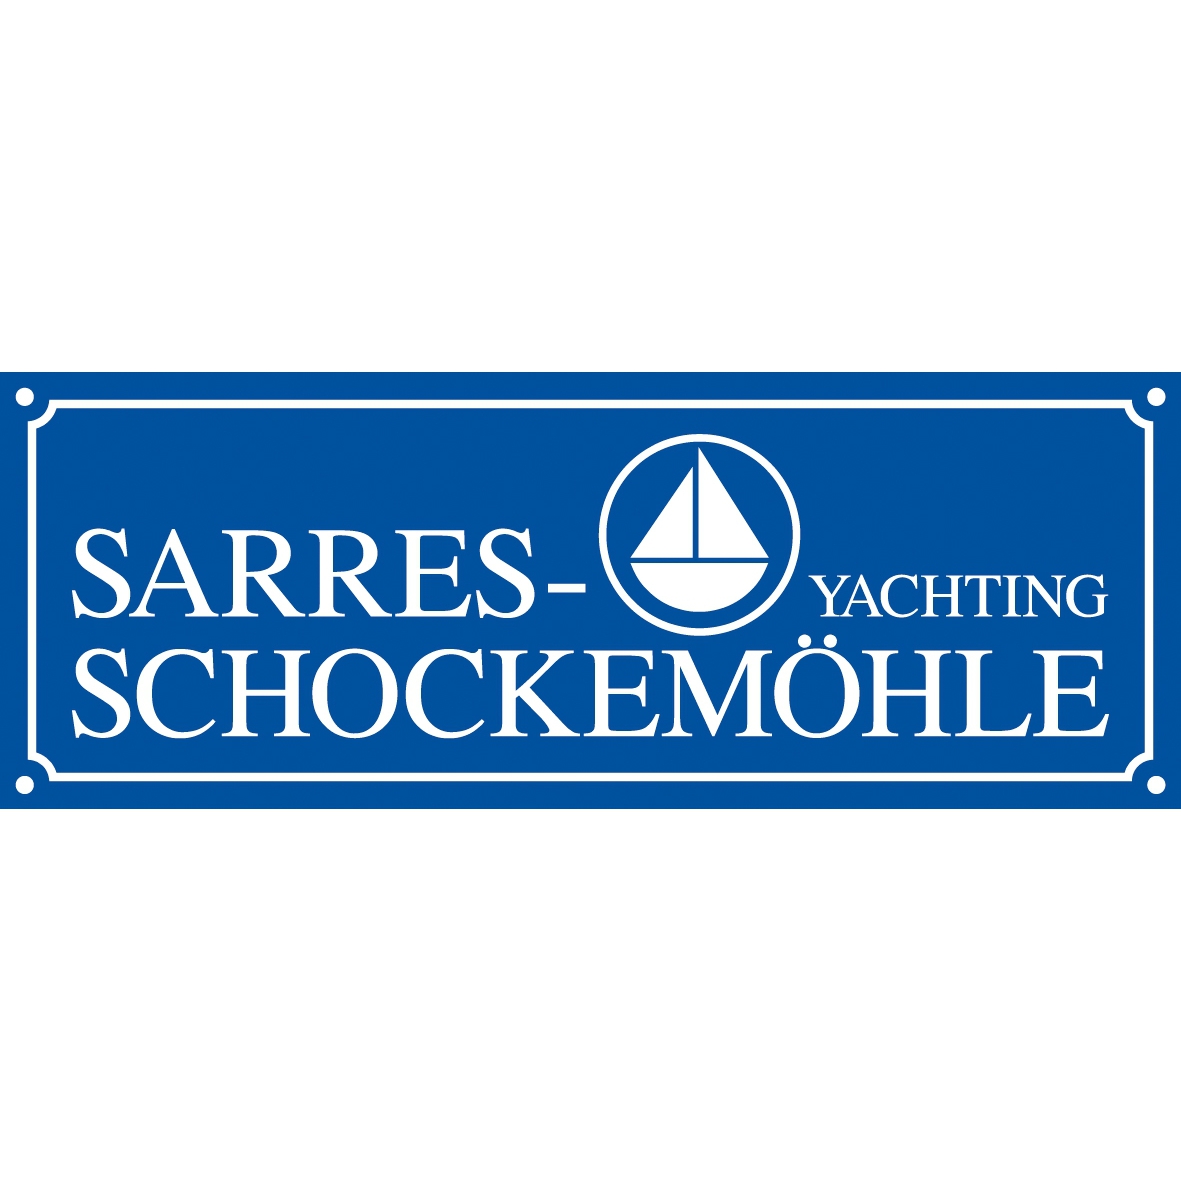 Sarres-Schockemöhle Yachting GmbH Logo